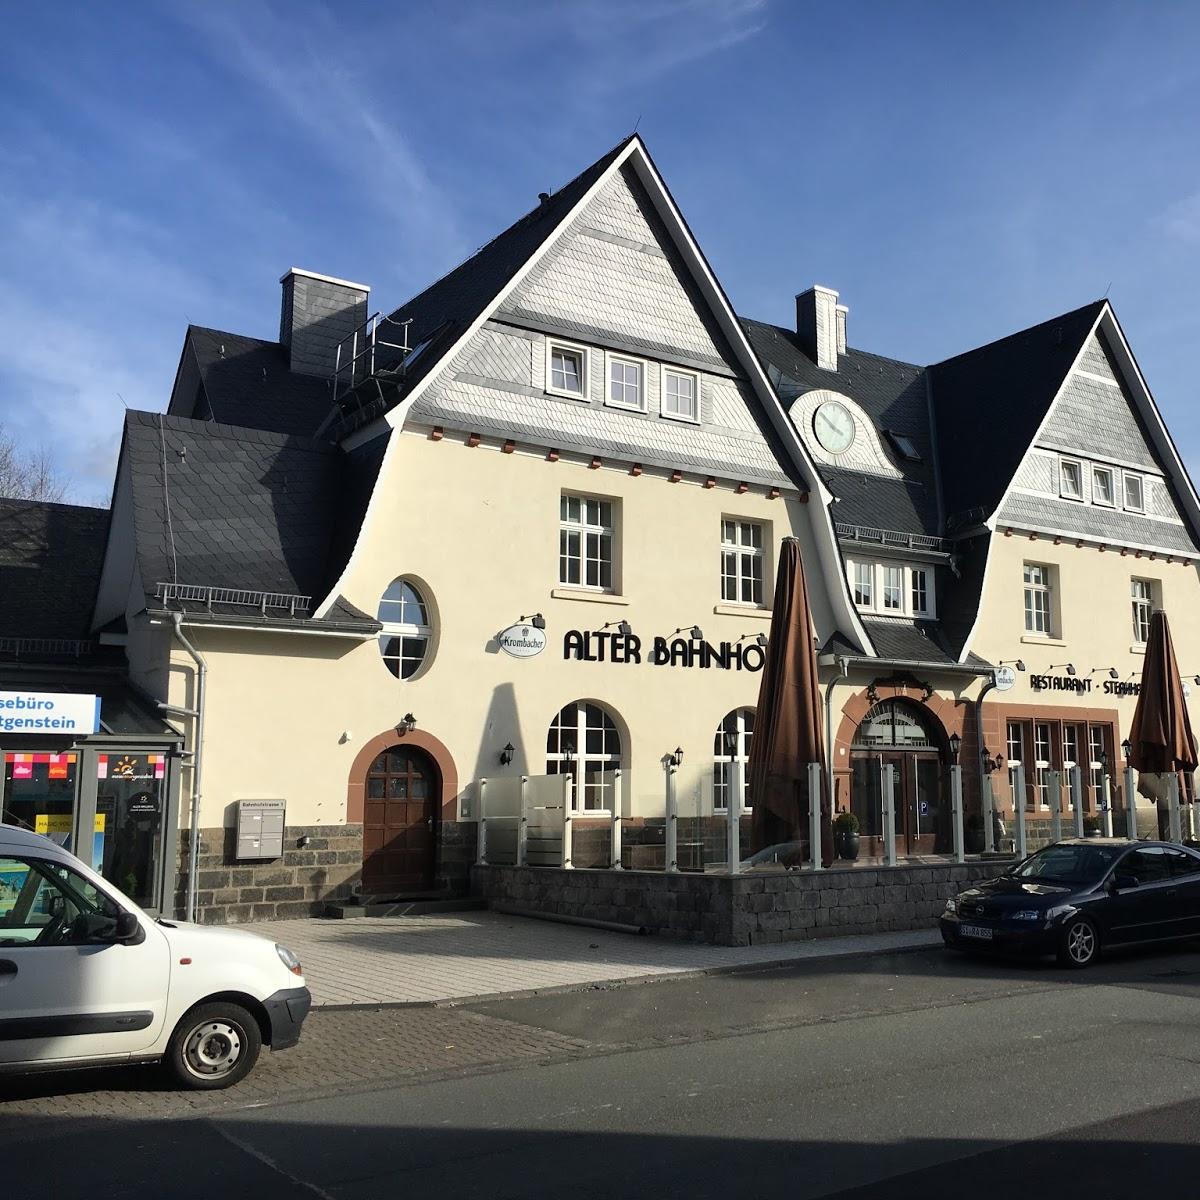 Restaurant "ALTER BAHNHOF BERLEBURG" in Bad Berleburg